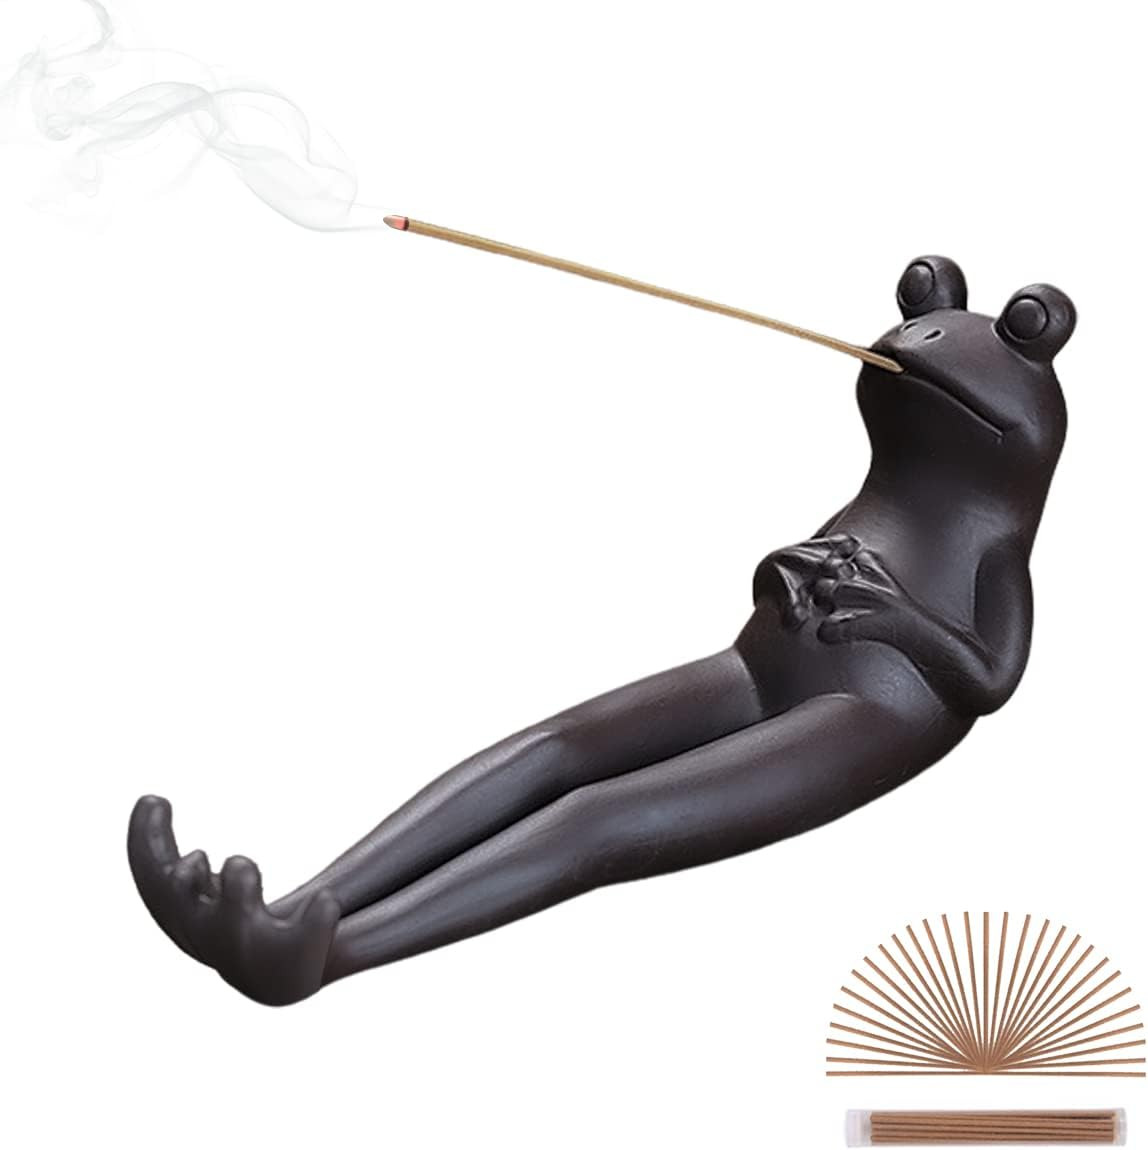 Frog Incense Stick Holder - Ceramic Insence Burner Ash Catcher, Insense Stand wi